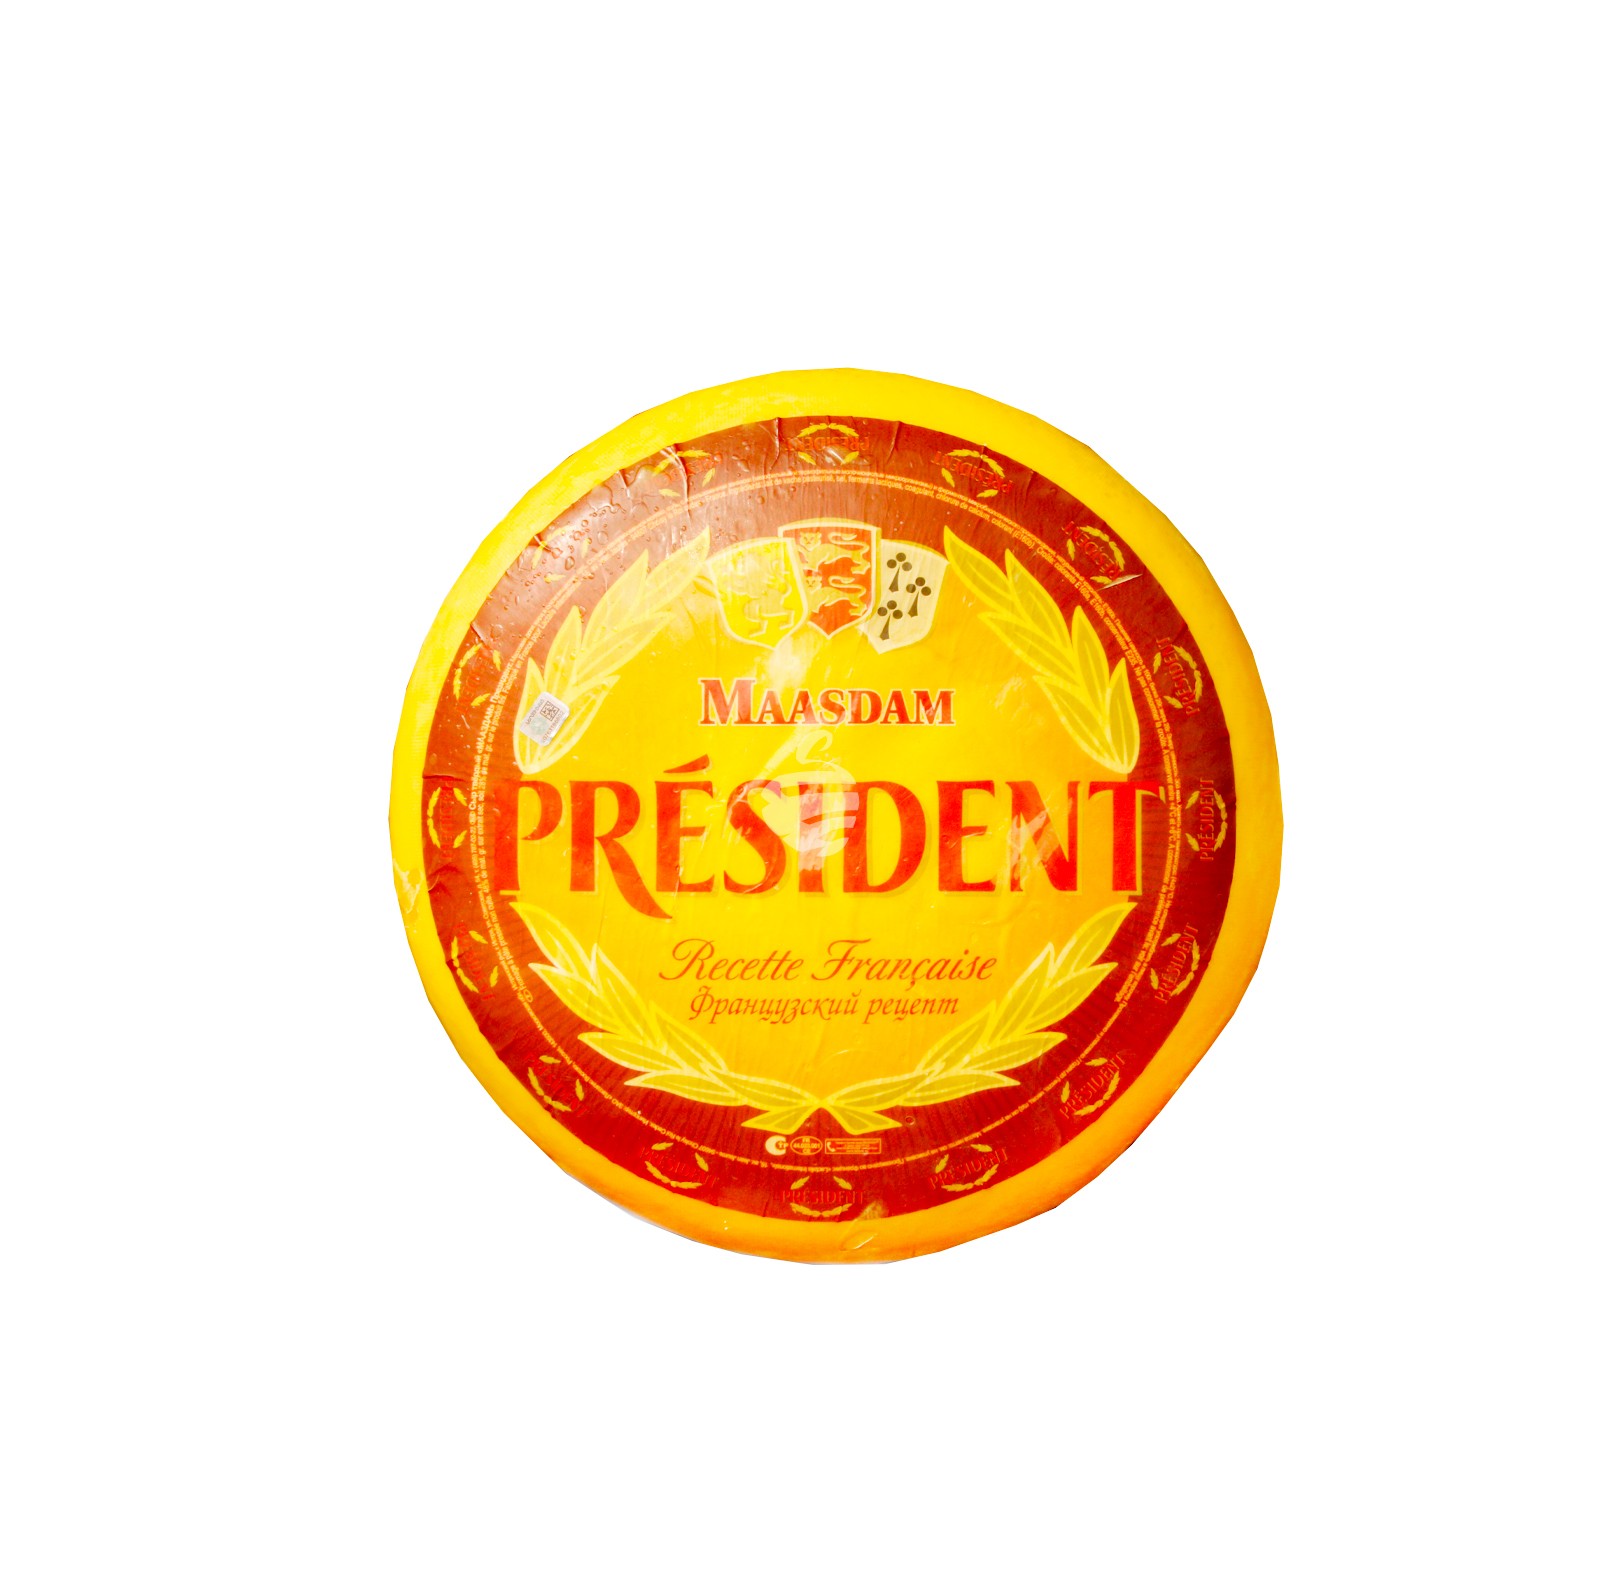 Cheese mazdam "President"